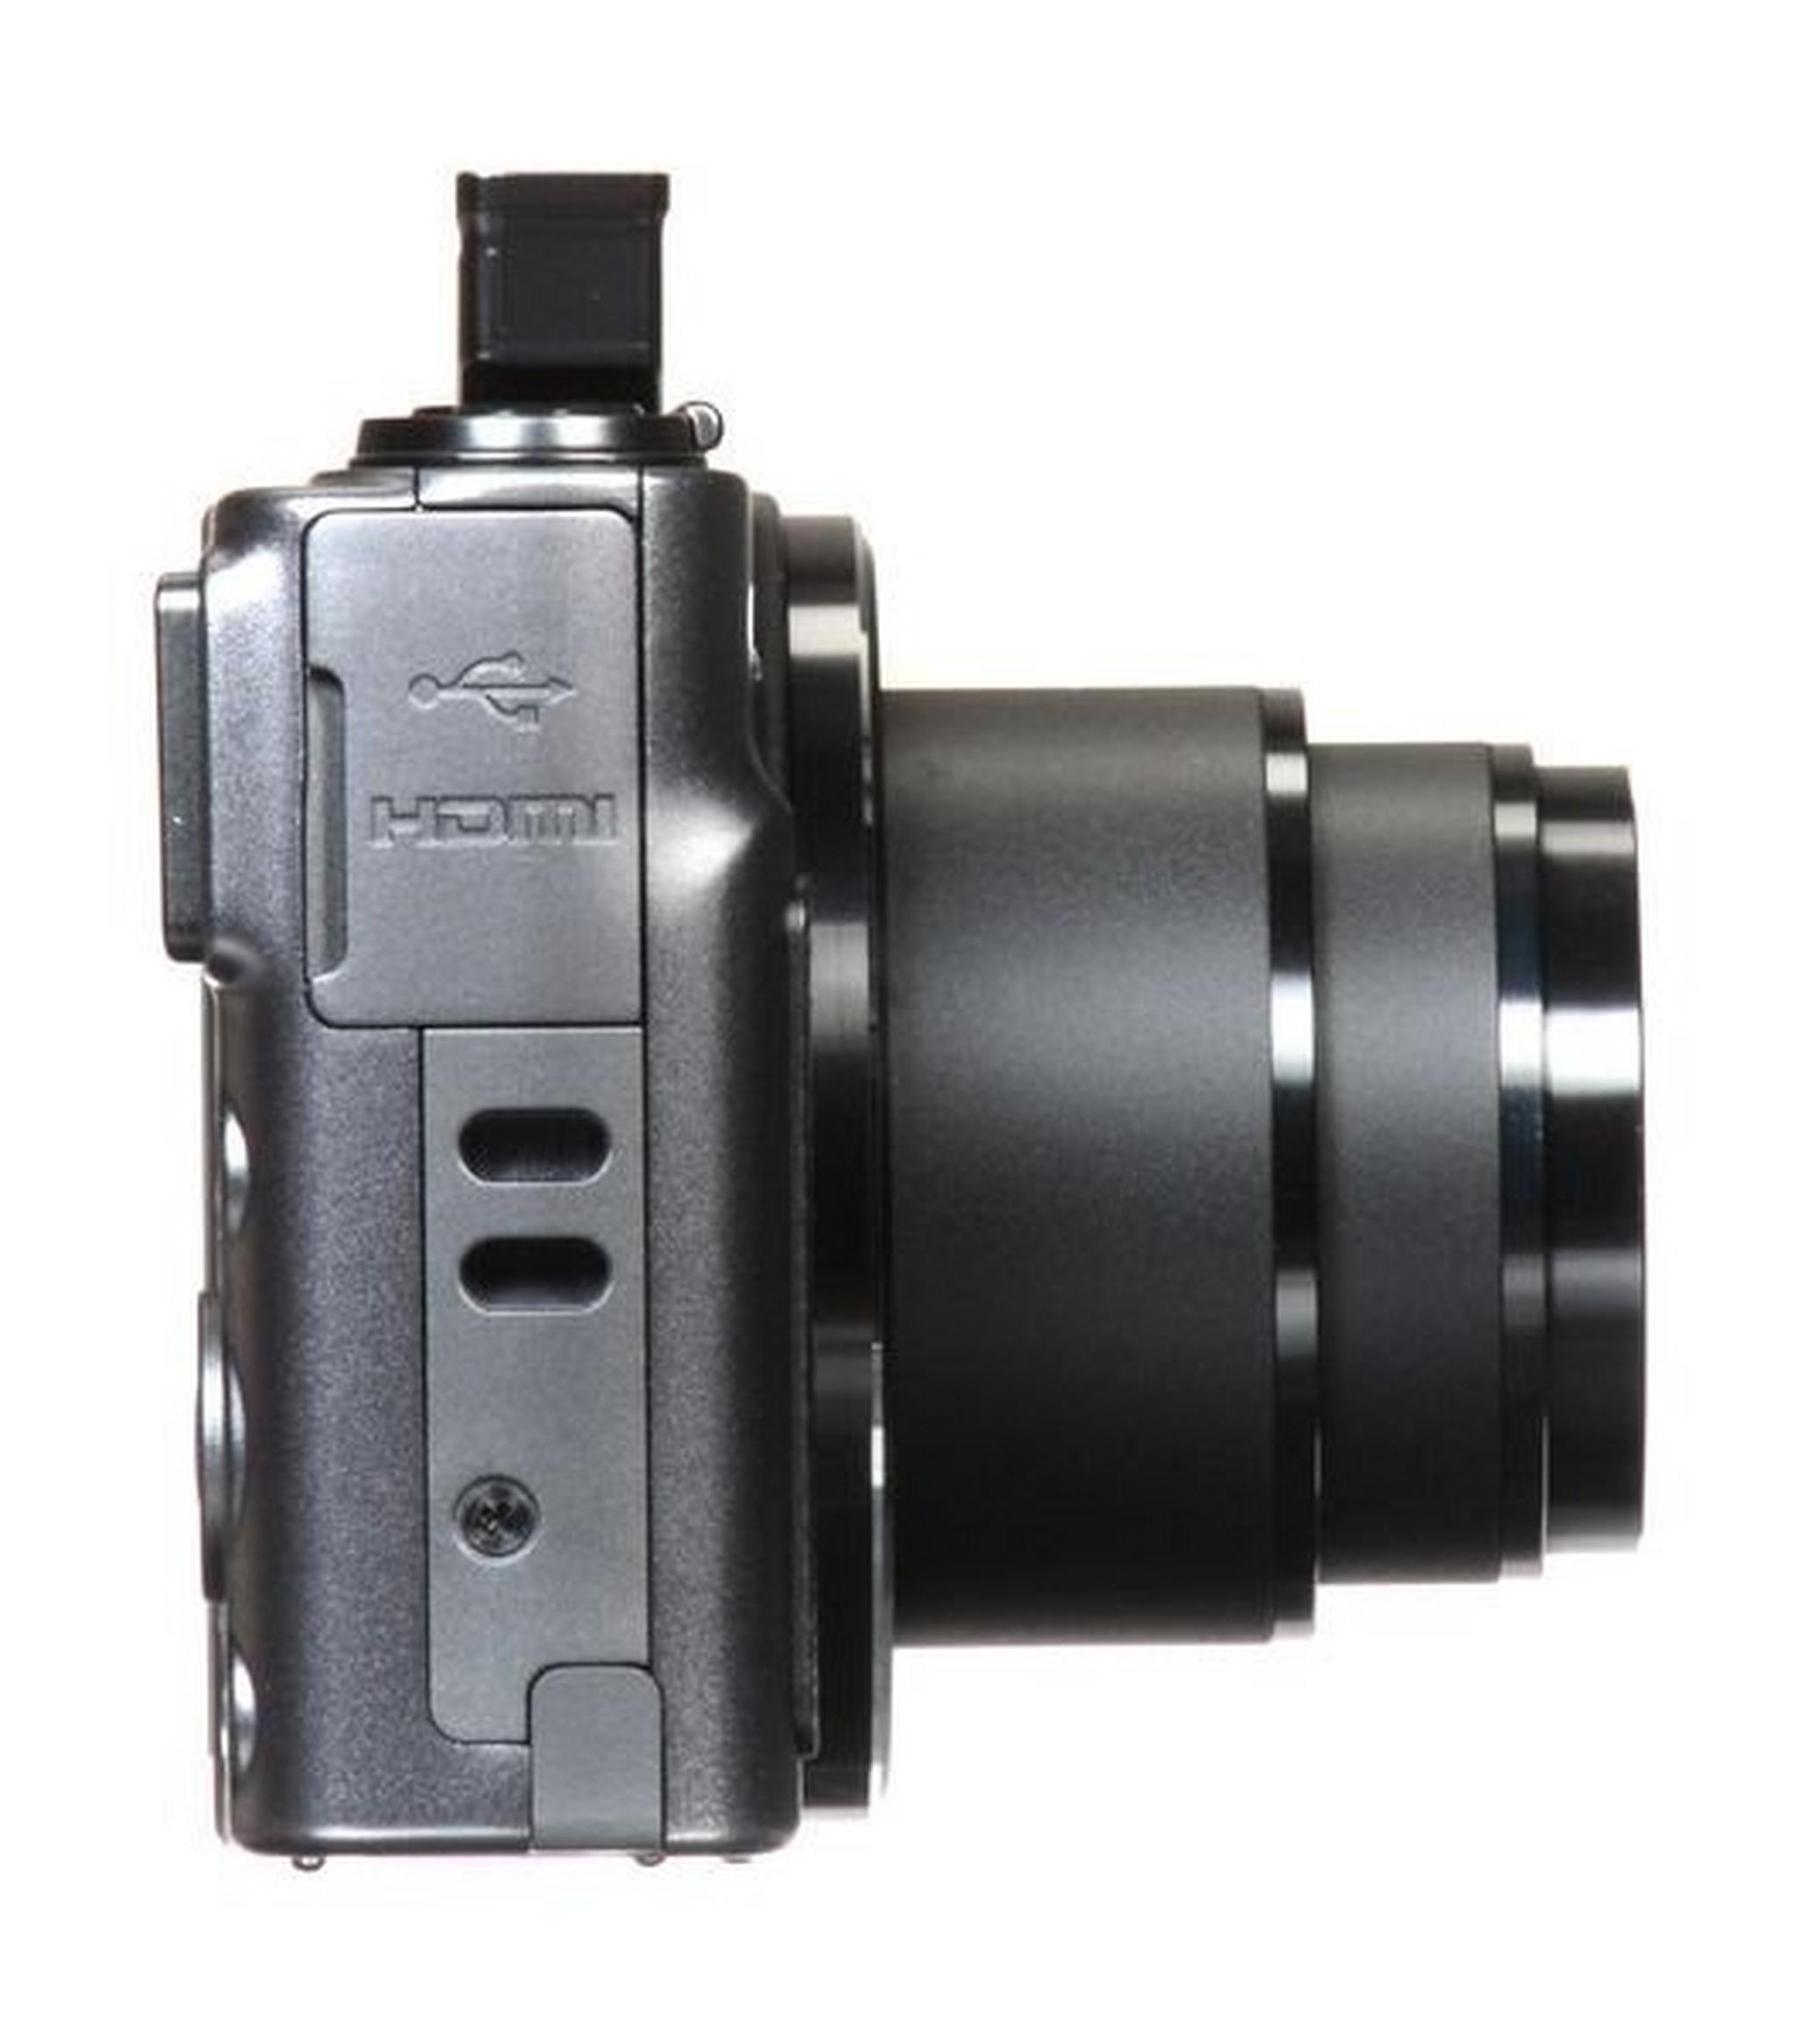 الكاميرا الرقمية كانون باورشوت إس إكس٦٢٠ إتش إس بدقة ٢٠,٢ ميجابكسل وتقنية الواي فاي - أسود (SX620 HS)